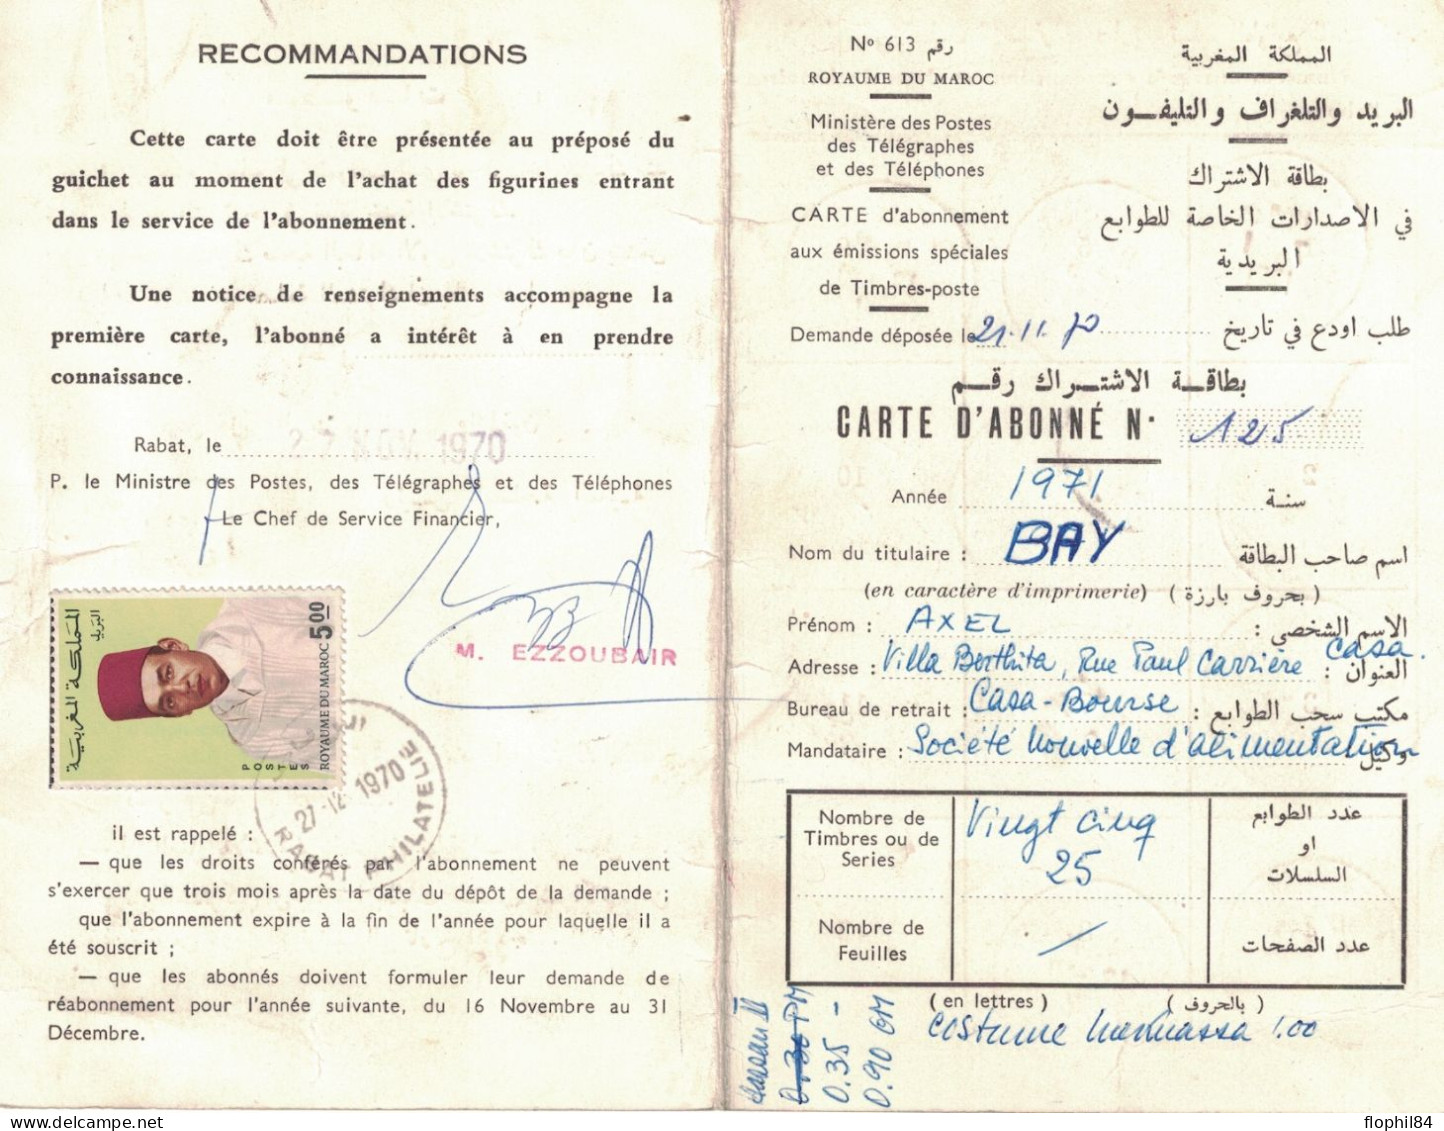 MAROC - 5d POSTE SUR CARTE D'ABONNEMENT DE 1970 DE RABAT PHILATELIE - LE 27-11-1970 - CACHET DE CASABLANCA BOURSE - Morocco (1956-...)